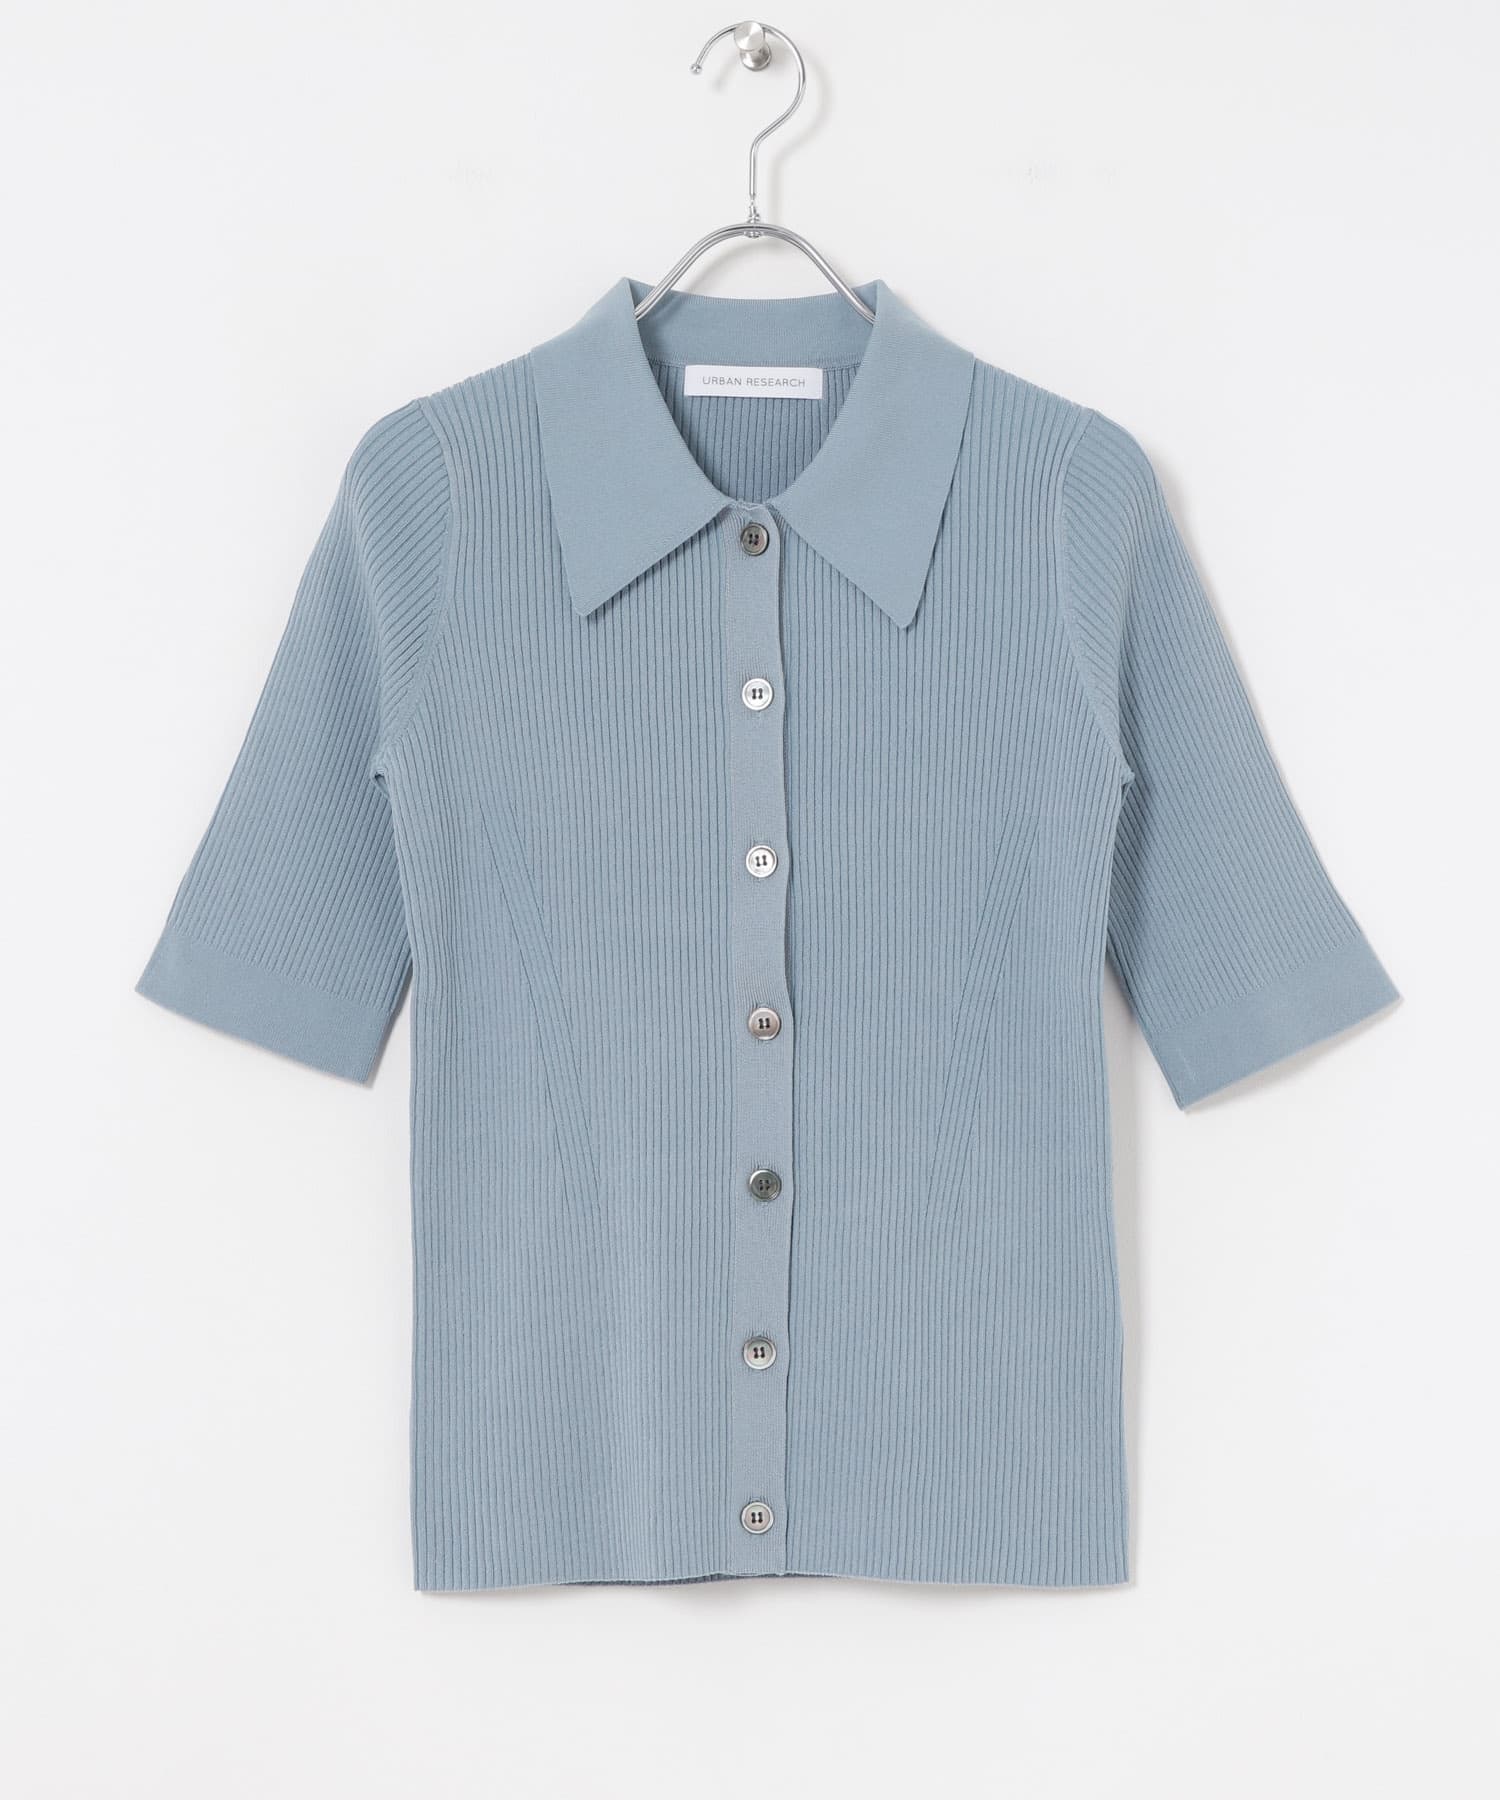 五分袖襯衫領針織衫(藍色-FREE-BLUE)